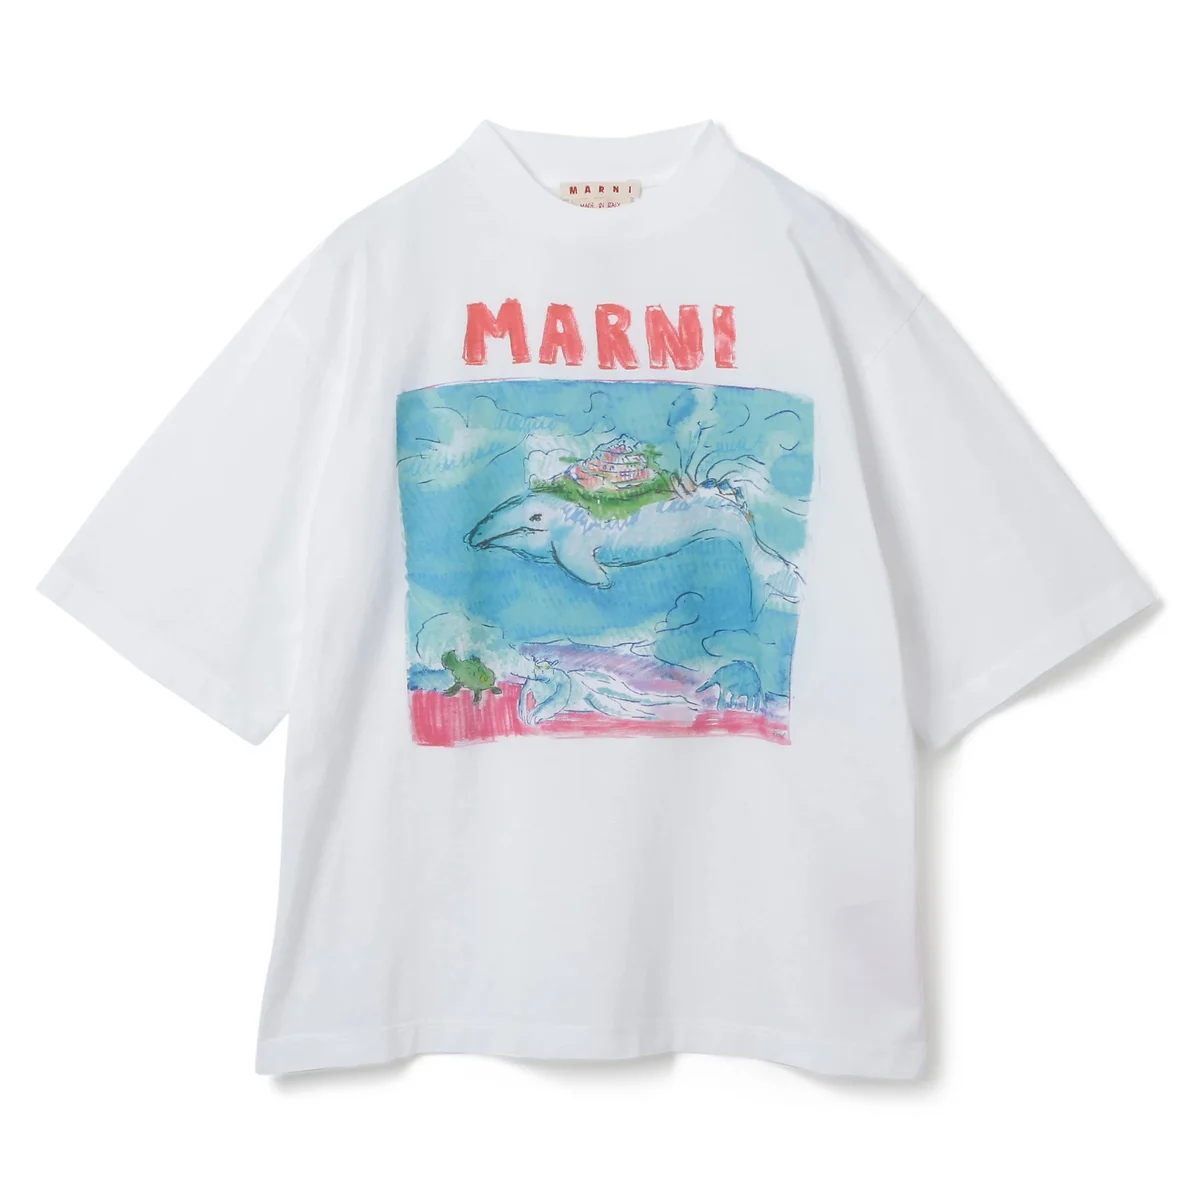 マルニのTシャツ